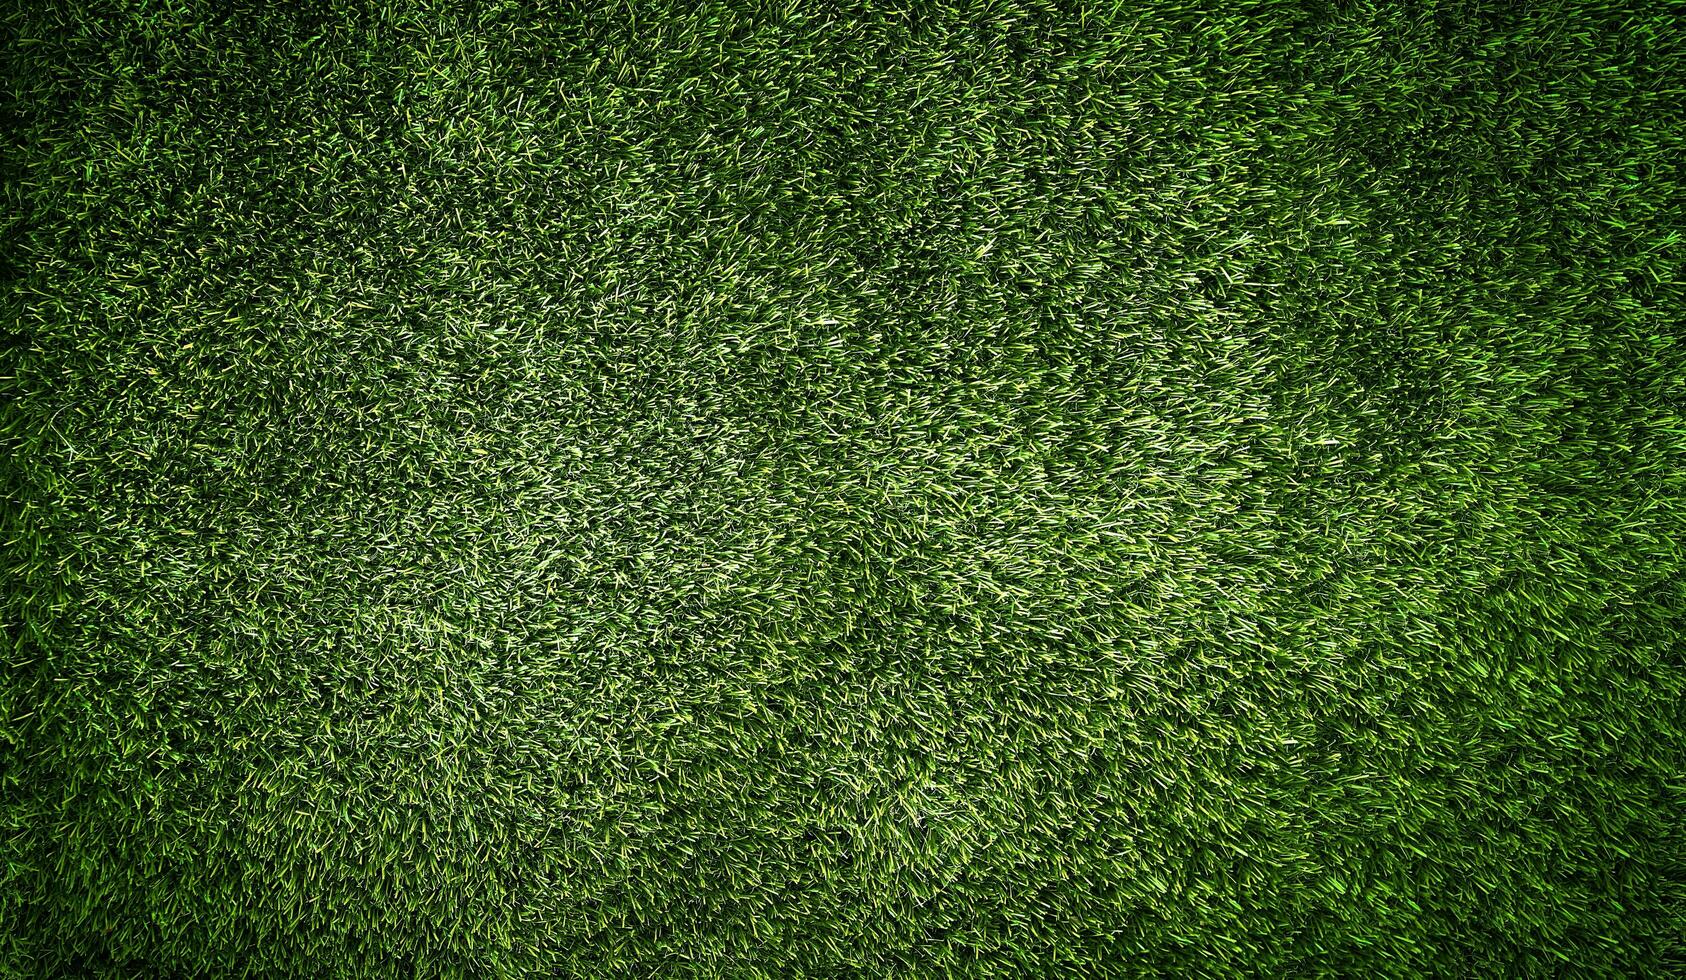 groen gras textuur achtergrond gras tuin concept gebruikt voor het maken van groene achtergrond voetbalveld, gras golf, groen gazon patroon gestructureerde achtergrond. foto